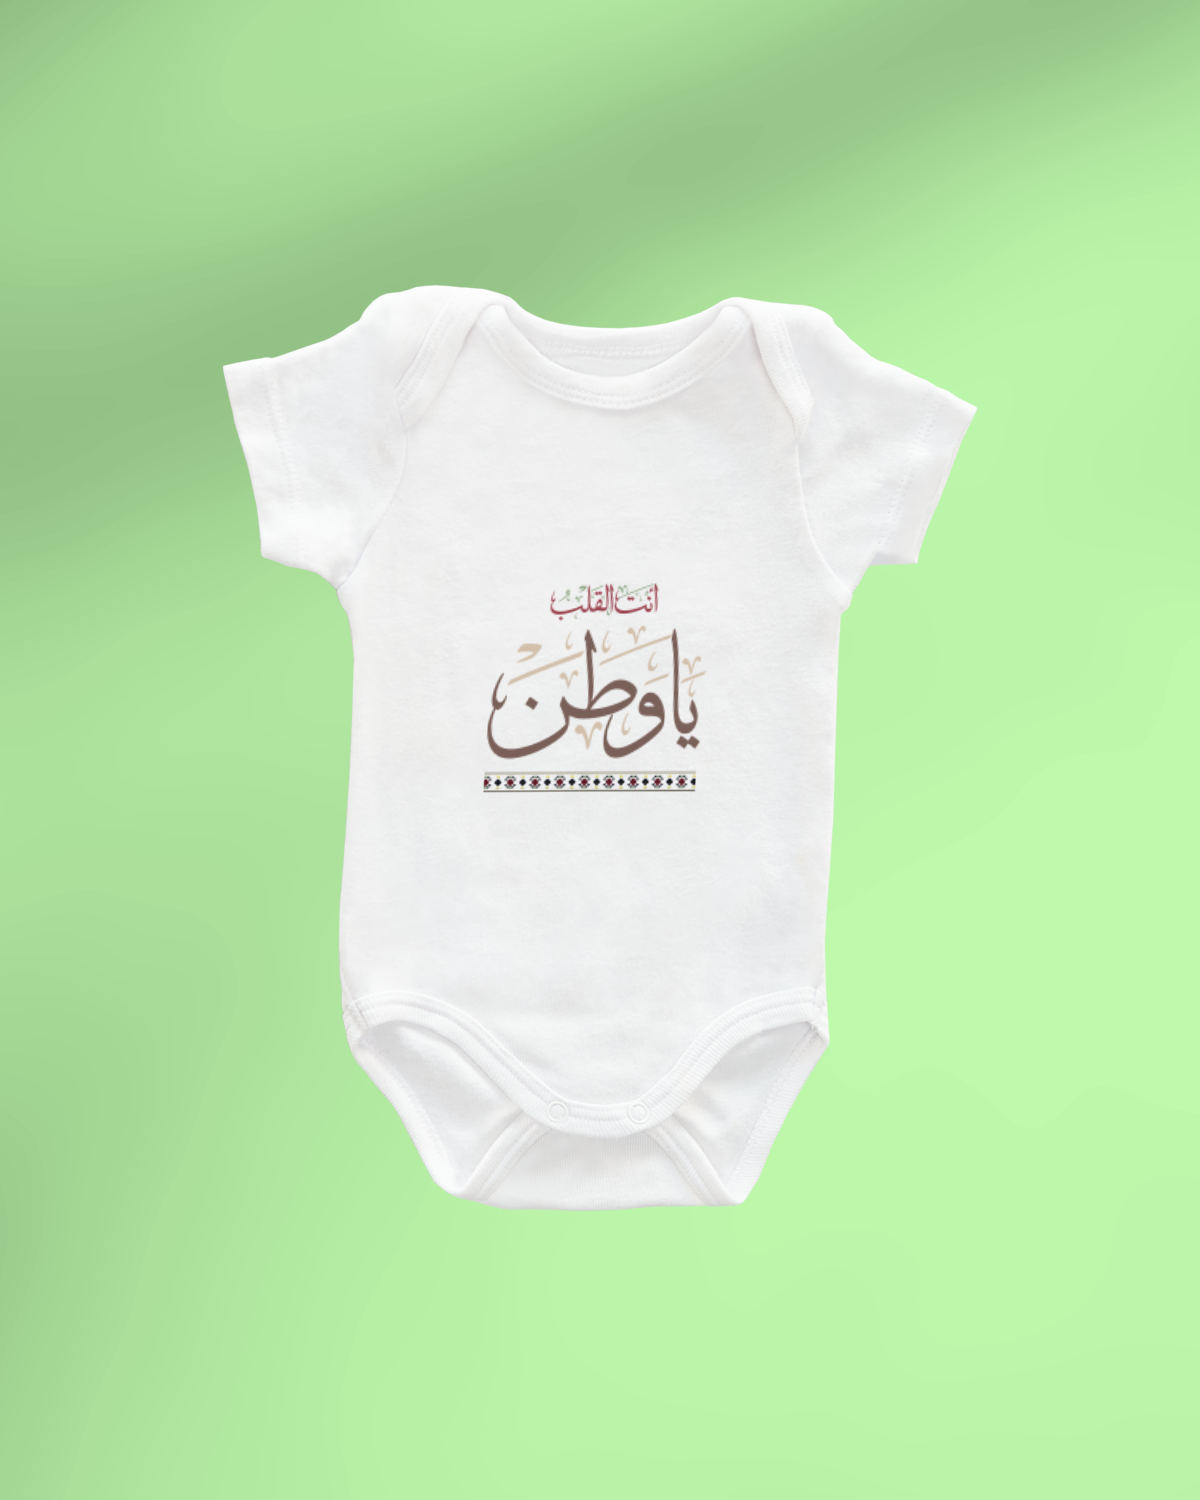 Foundation Day Baby Romper (Ant Alqalb Ya Watan)